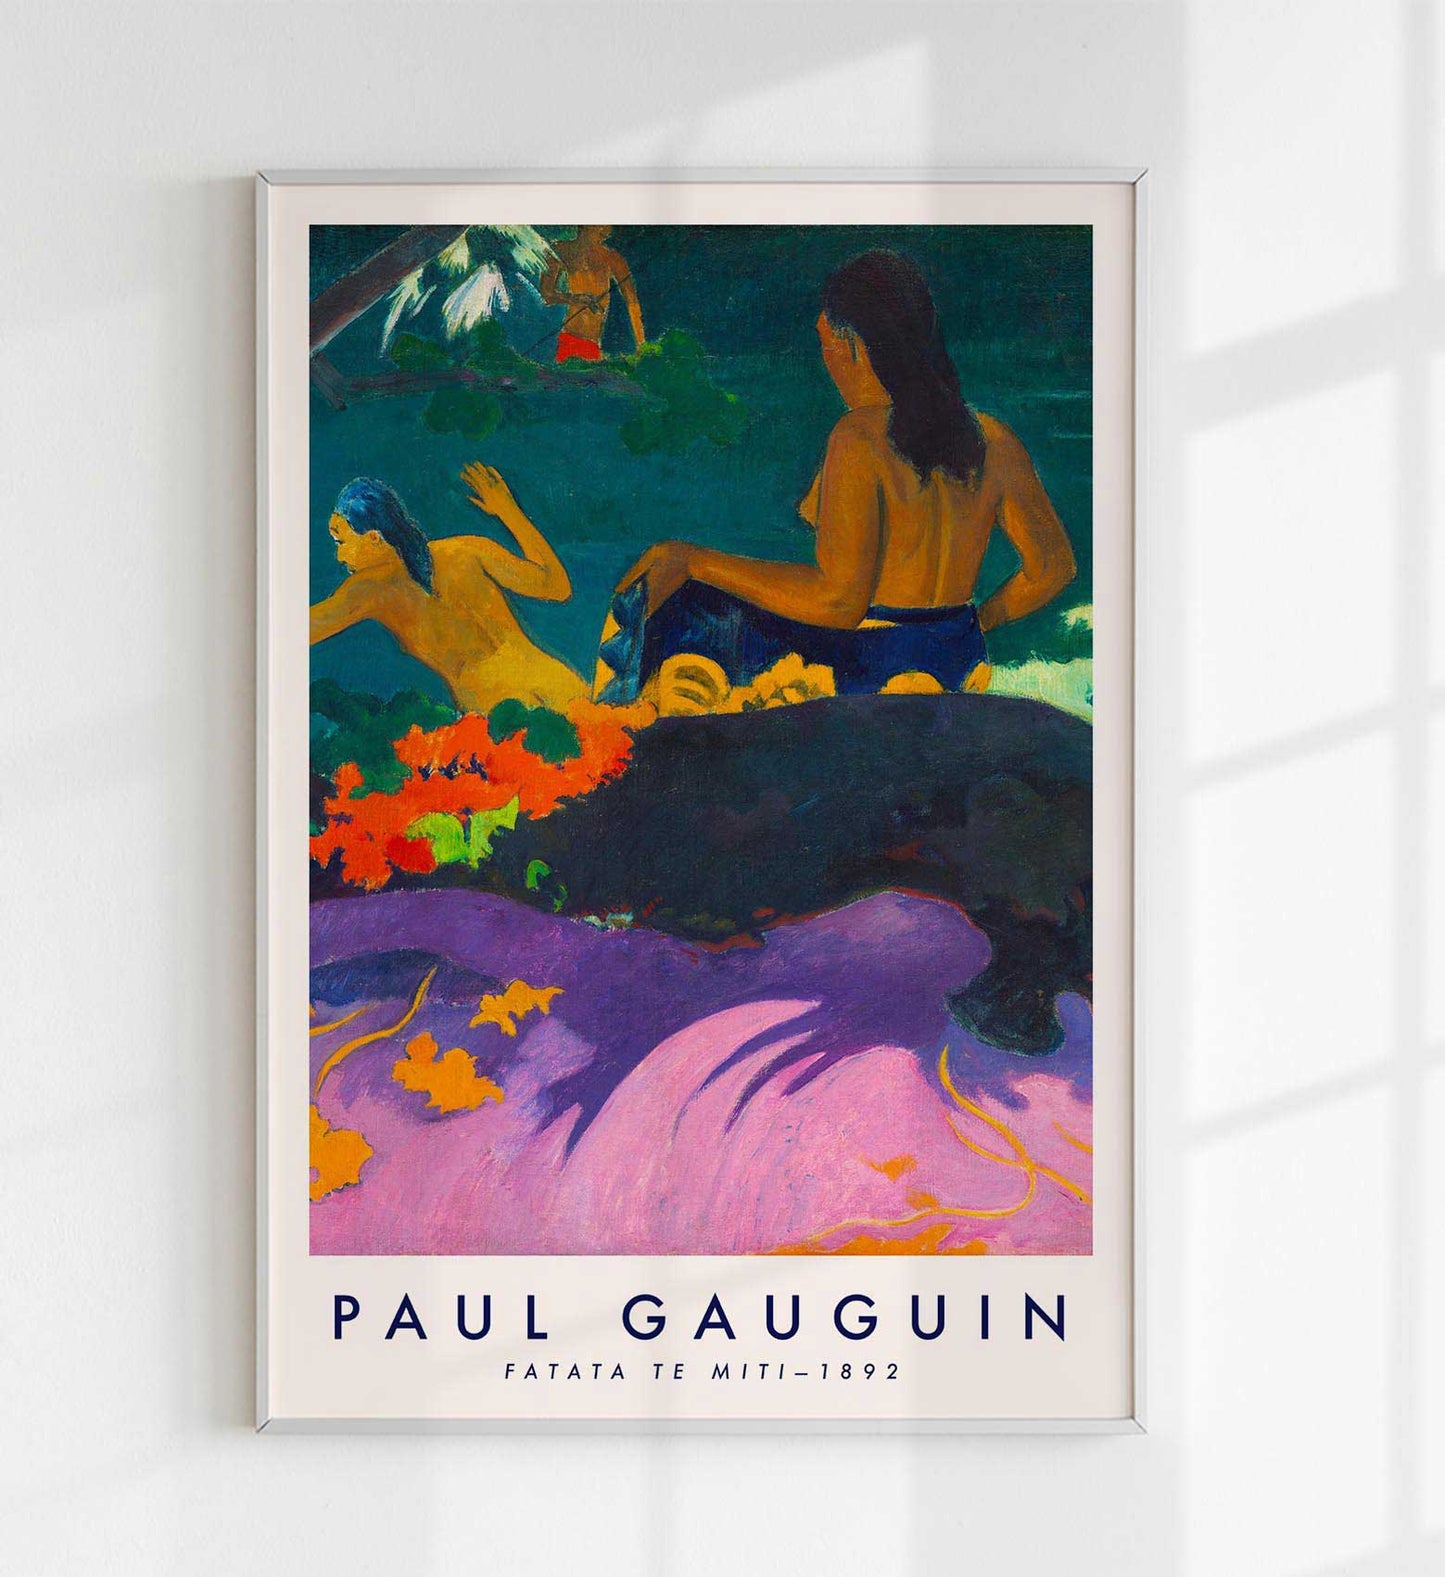 Fatata Te Miti by Paul Gauguin